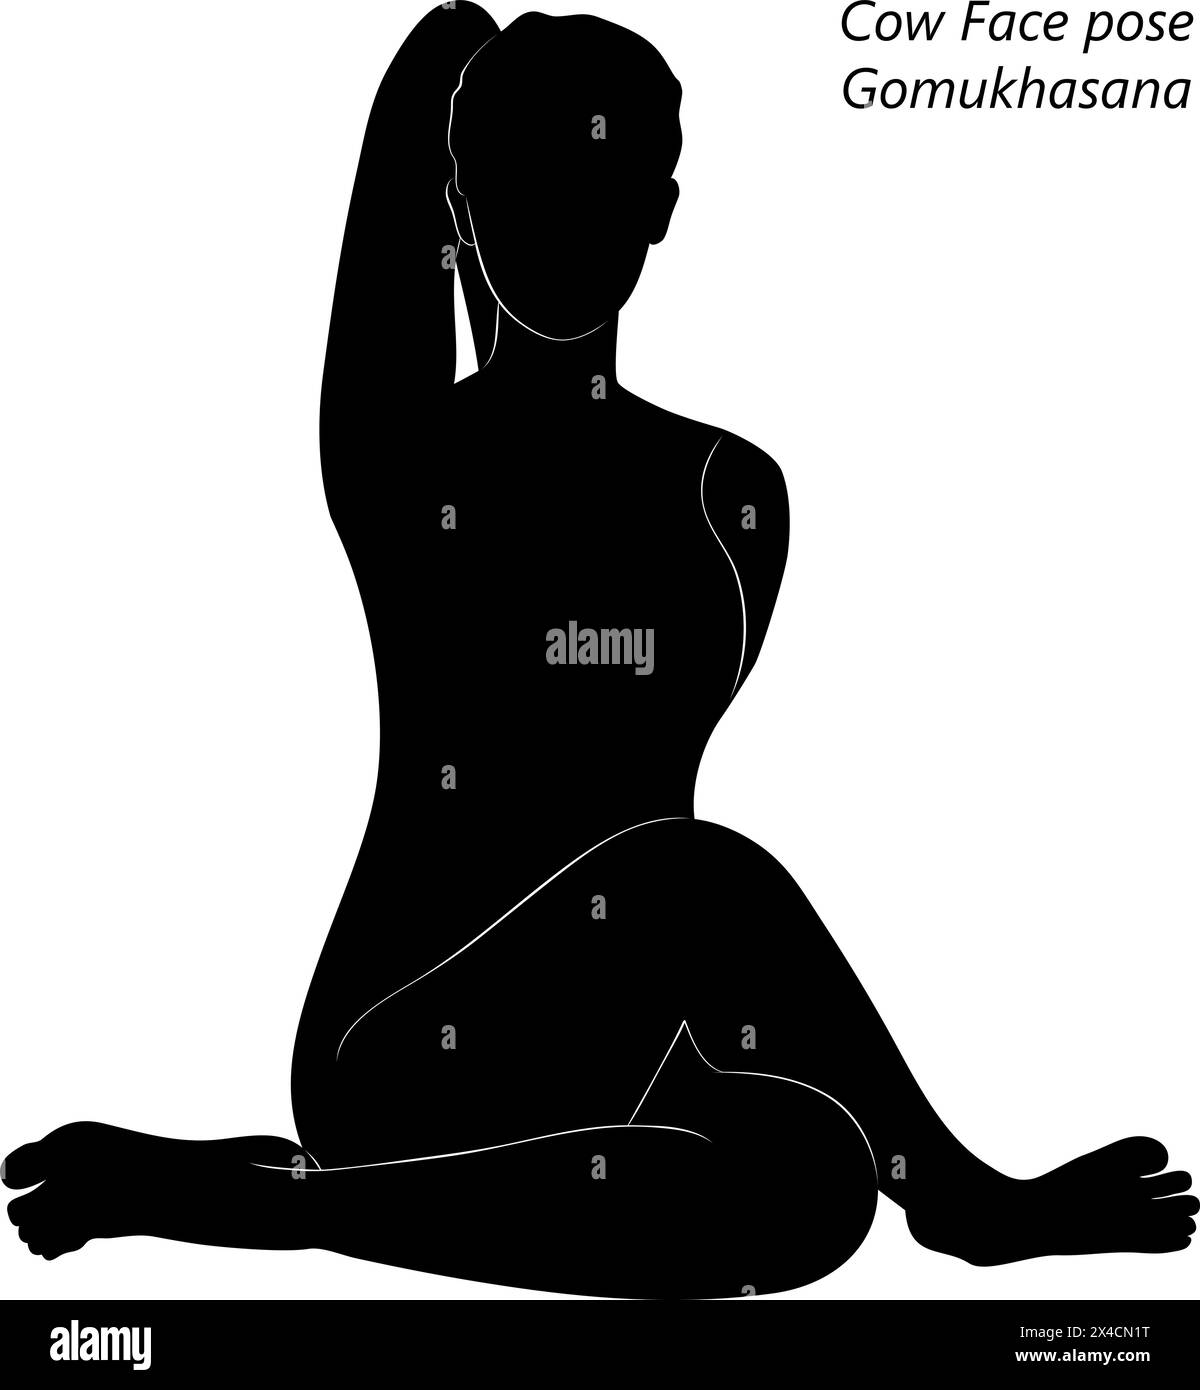 Silhouette einer jungen Frau, die Gomukhasana Yoga-Pose praktiziert. Haltung des Kuhgesichts. Mittlere Schwierigkeit. Isolierte Vektordarstellung Stock Vektor